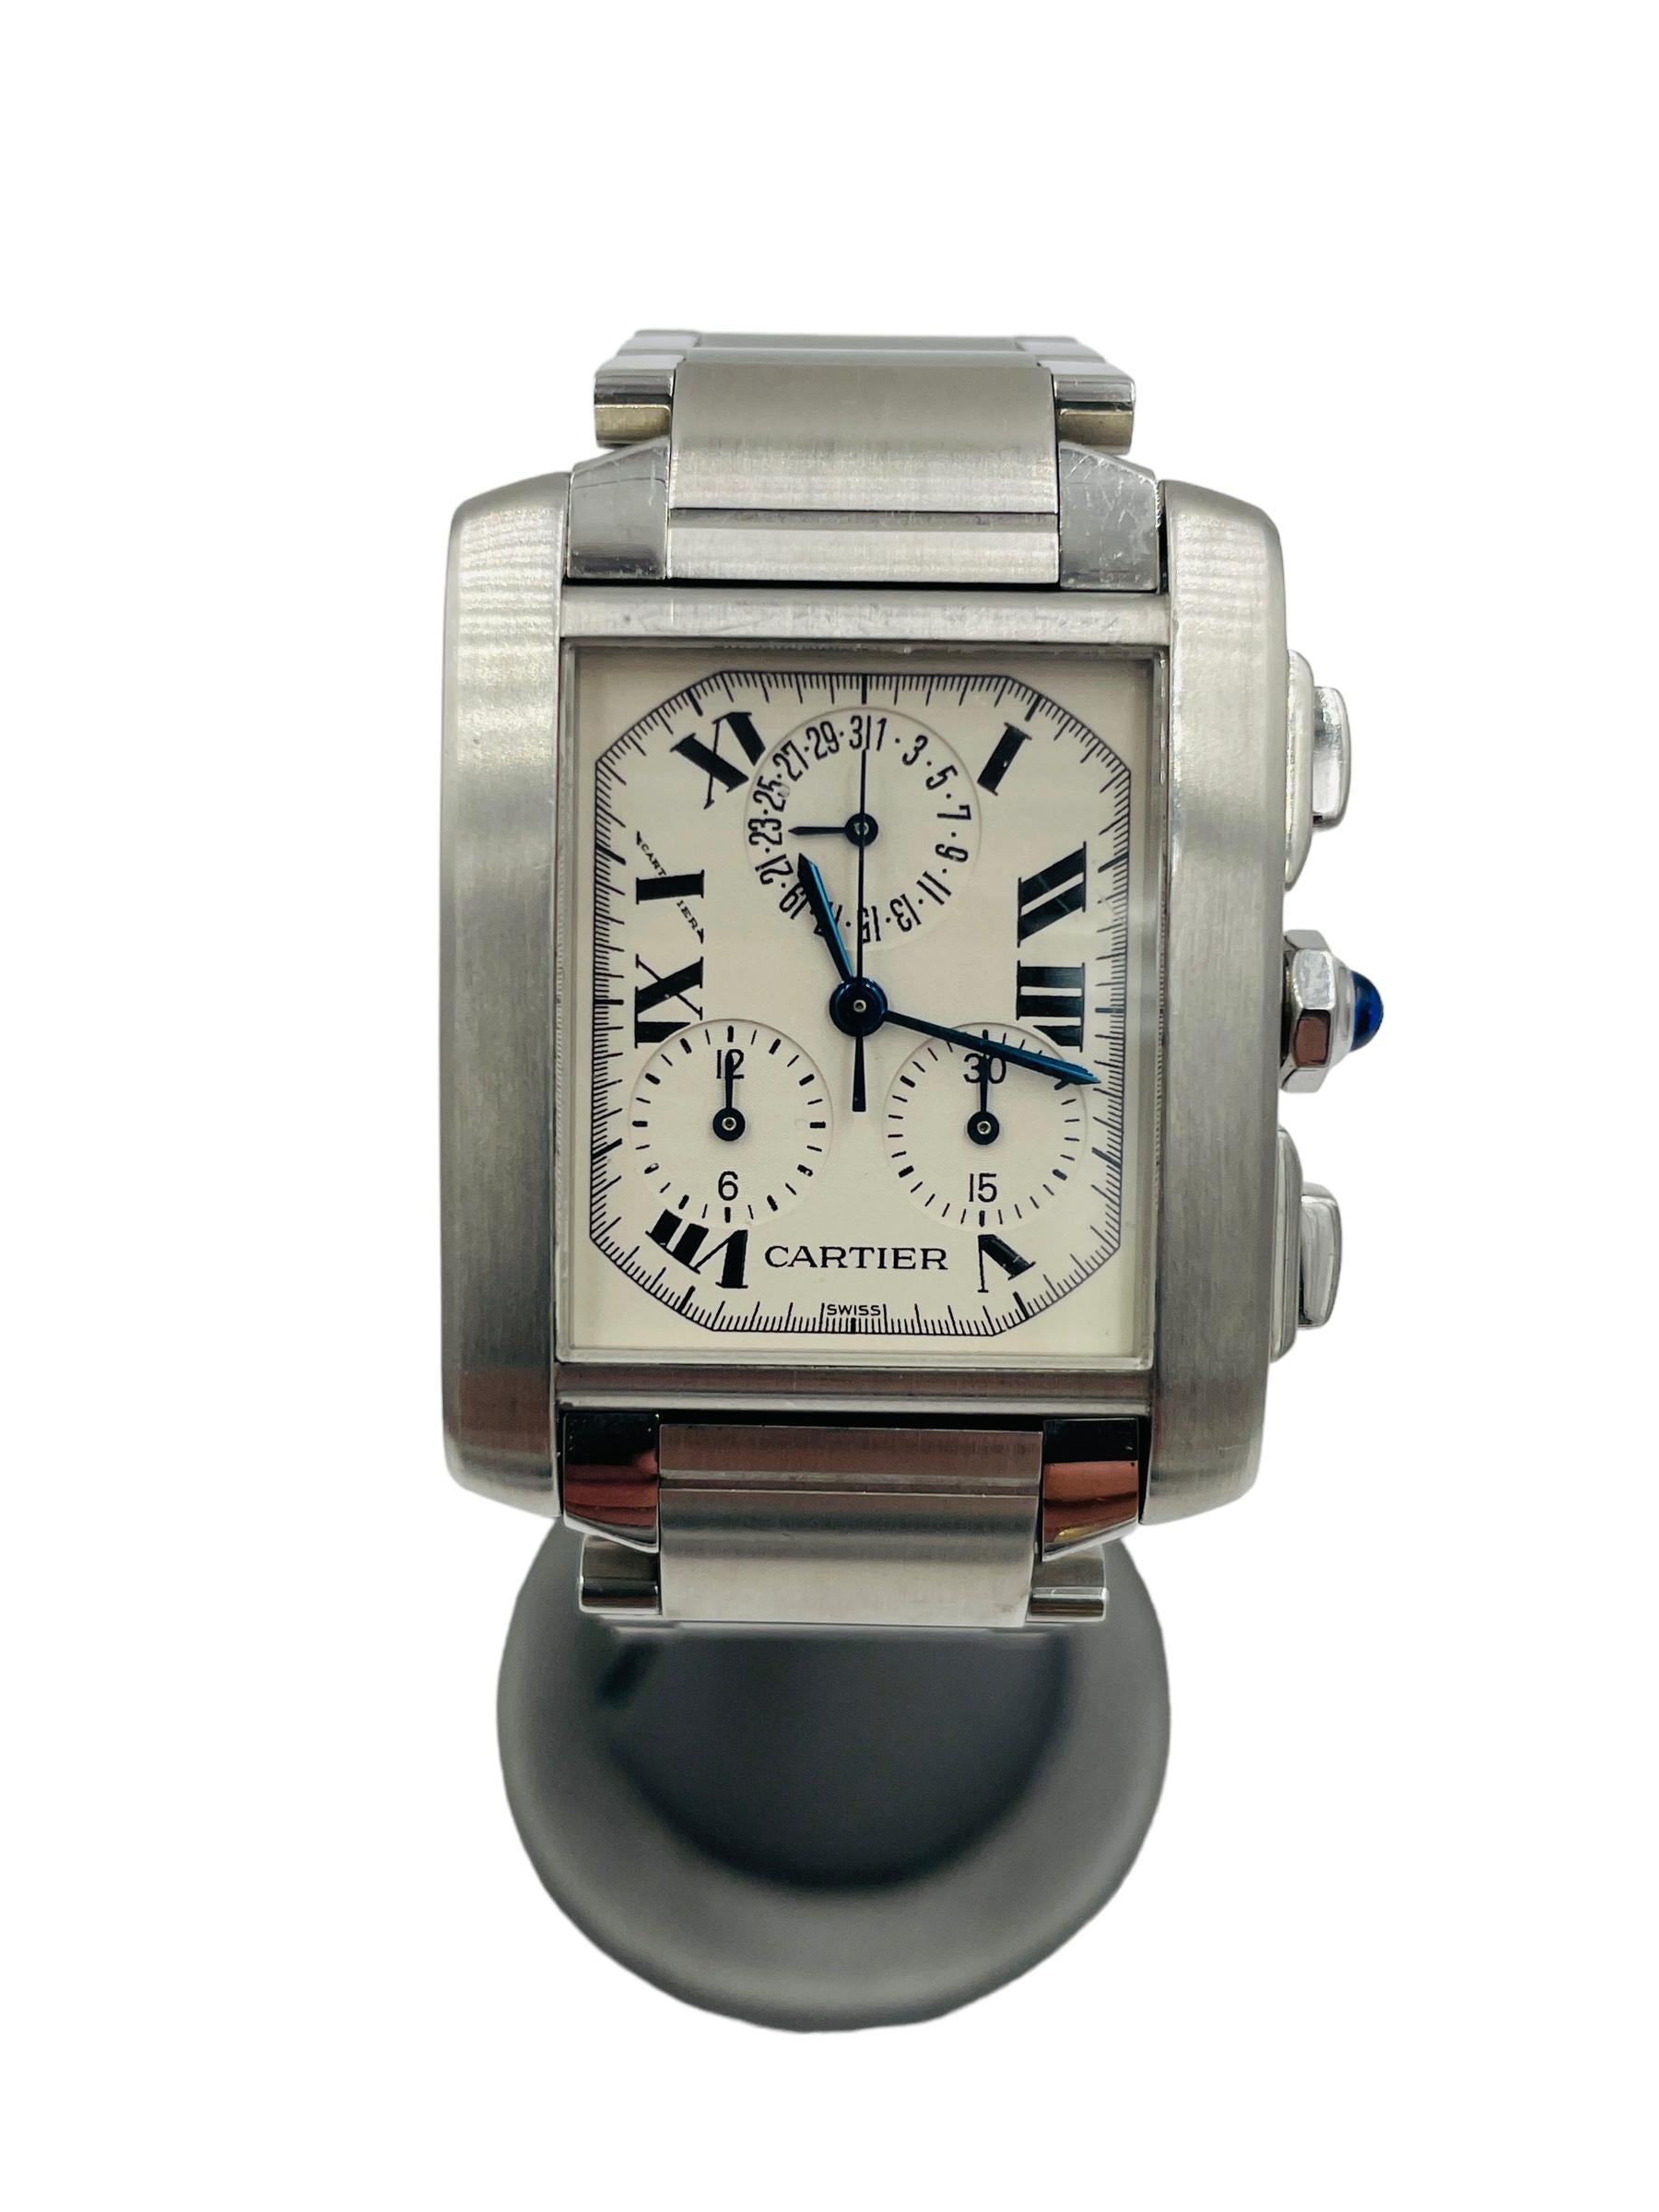 Cartier 2303 Tank Francaise Chronoflex Quarz Herrenarmbanduhr groß

SPEZIFIKATIONEN:  Cartier Chronoflex Quarz große Herrenuhr Ref 2303.  Diese Uhr ist in minty Zustand, Gehäusegröße 28mm durch 36mm, und wird bis zu 7 